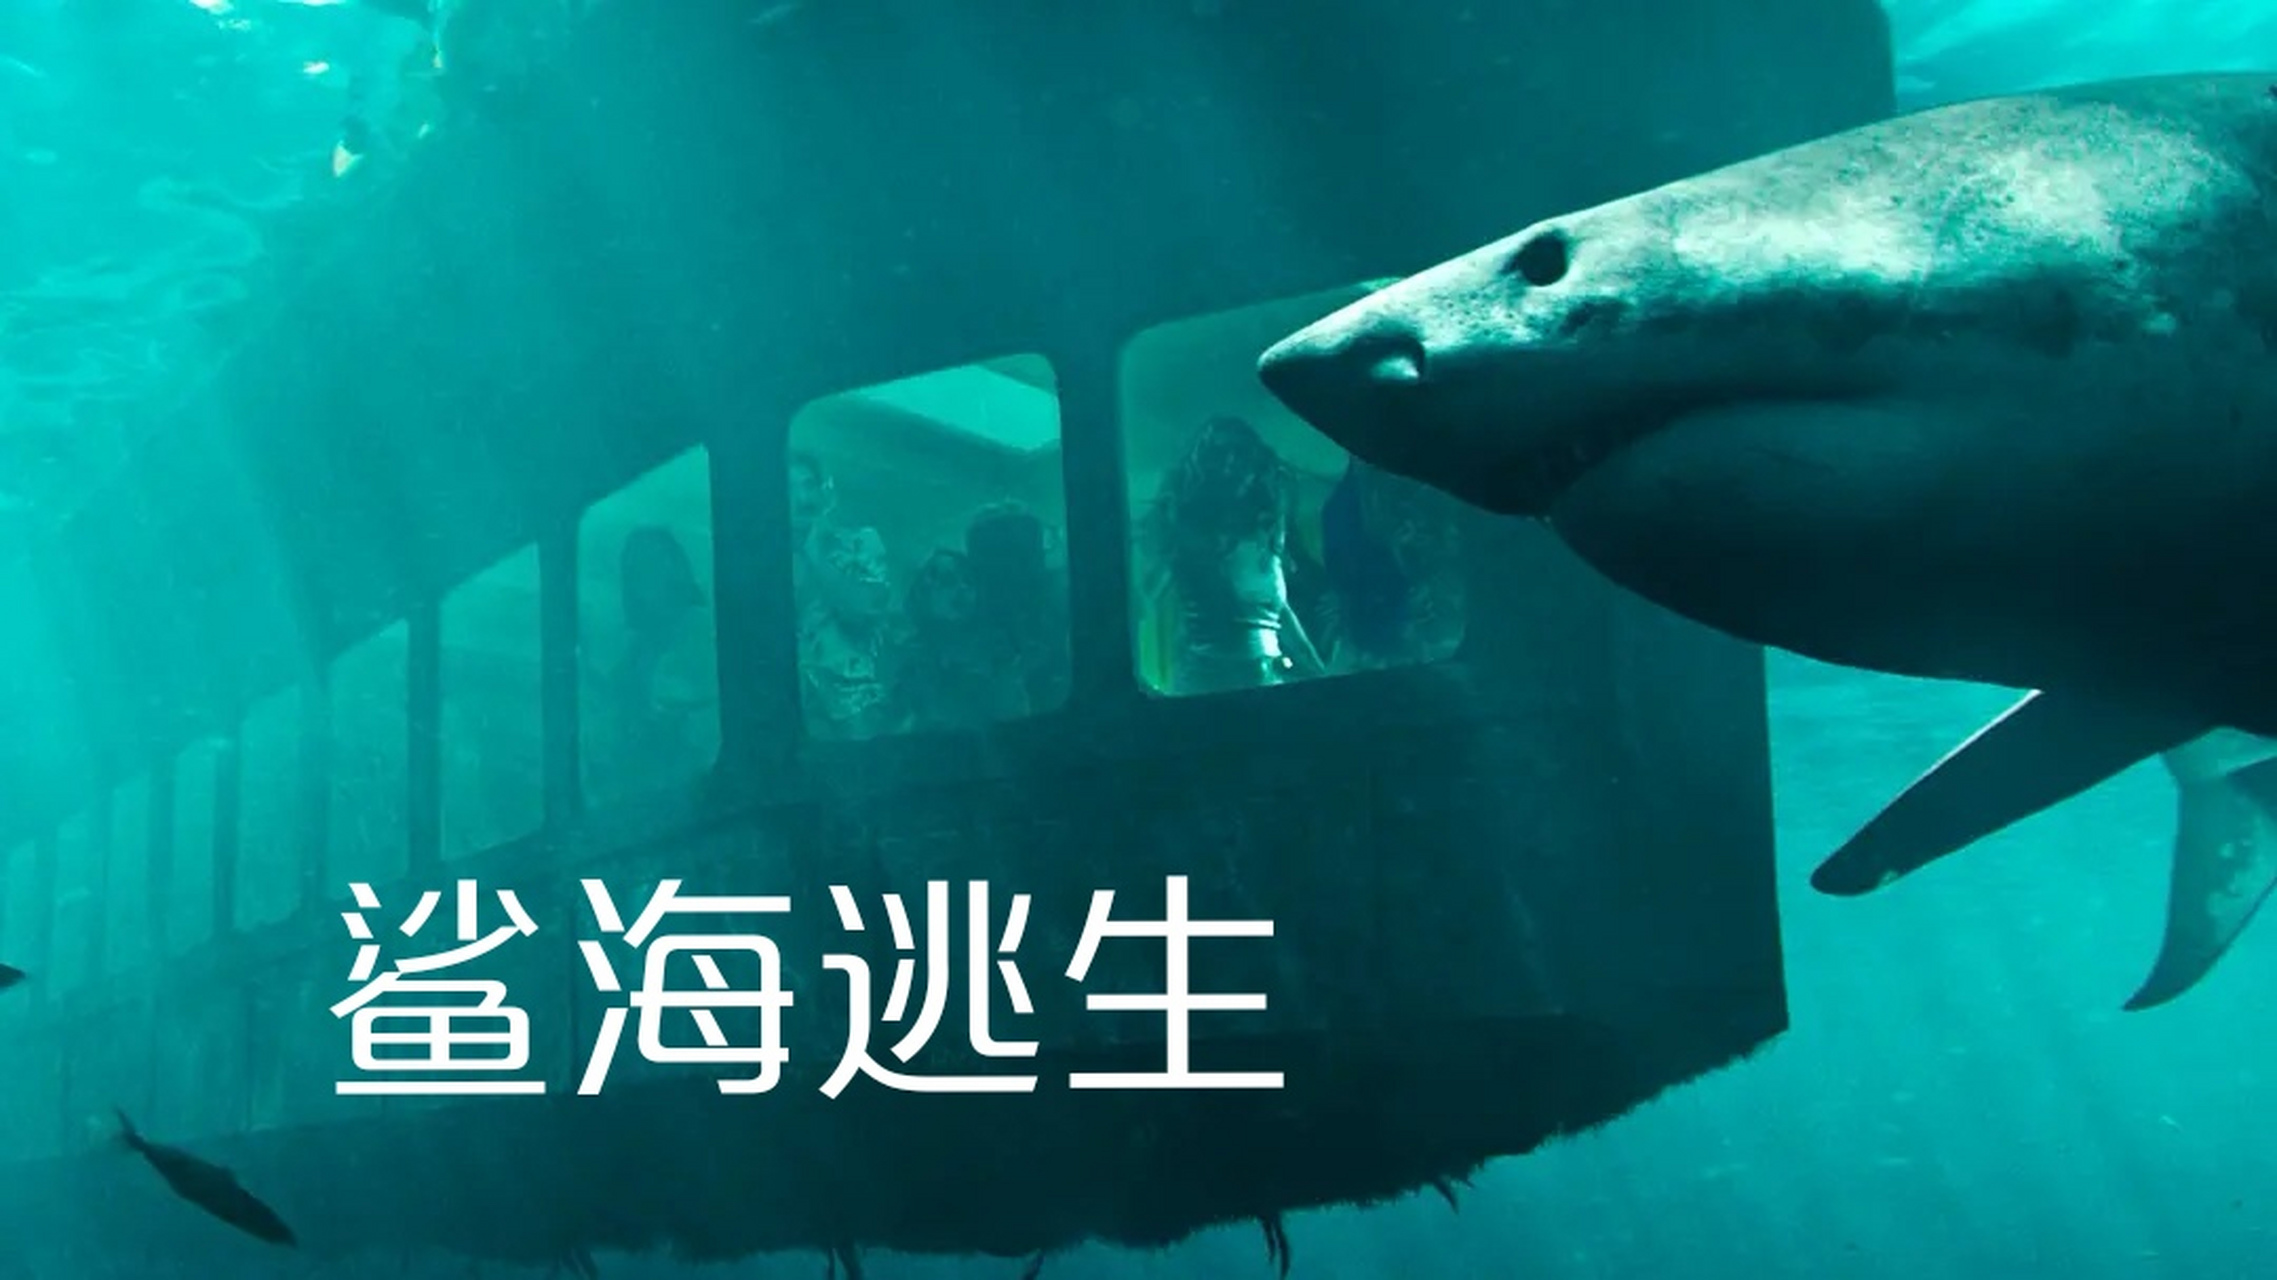 妹子们水下冒险遭遇鲨鱼袭击 冒险惊悚片《鲨海逃生》  每日电影推荐